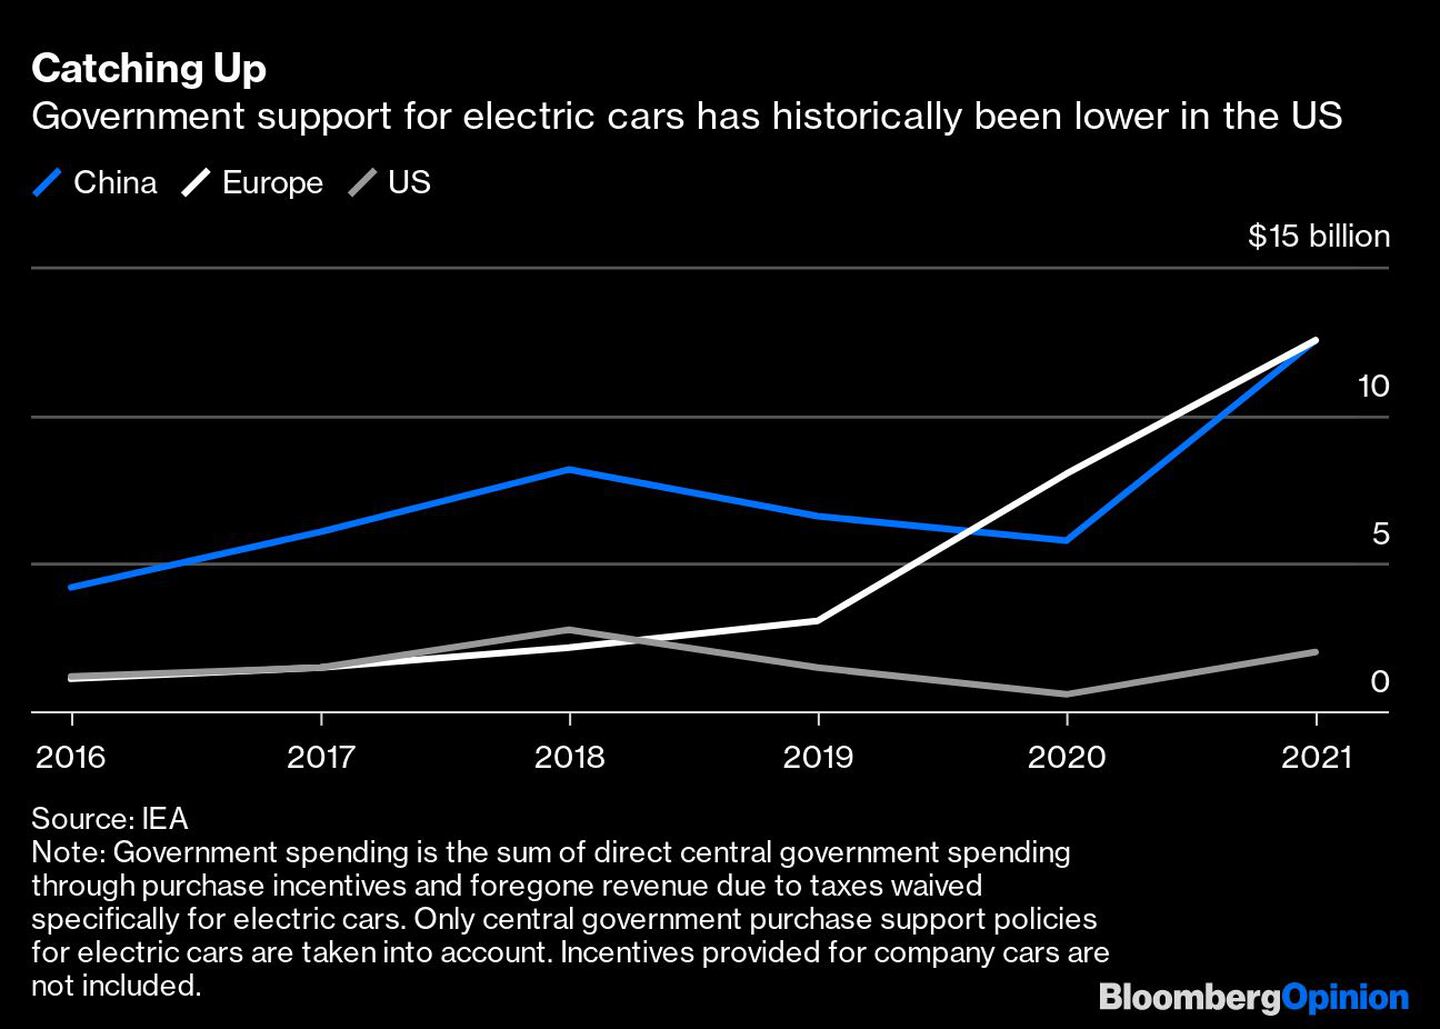  Las ayudas públicas a los coches eléctricos han sido históricamente menores en EE.UU.dfd